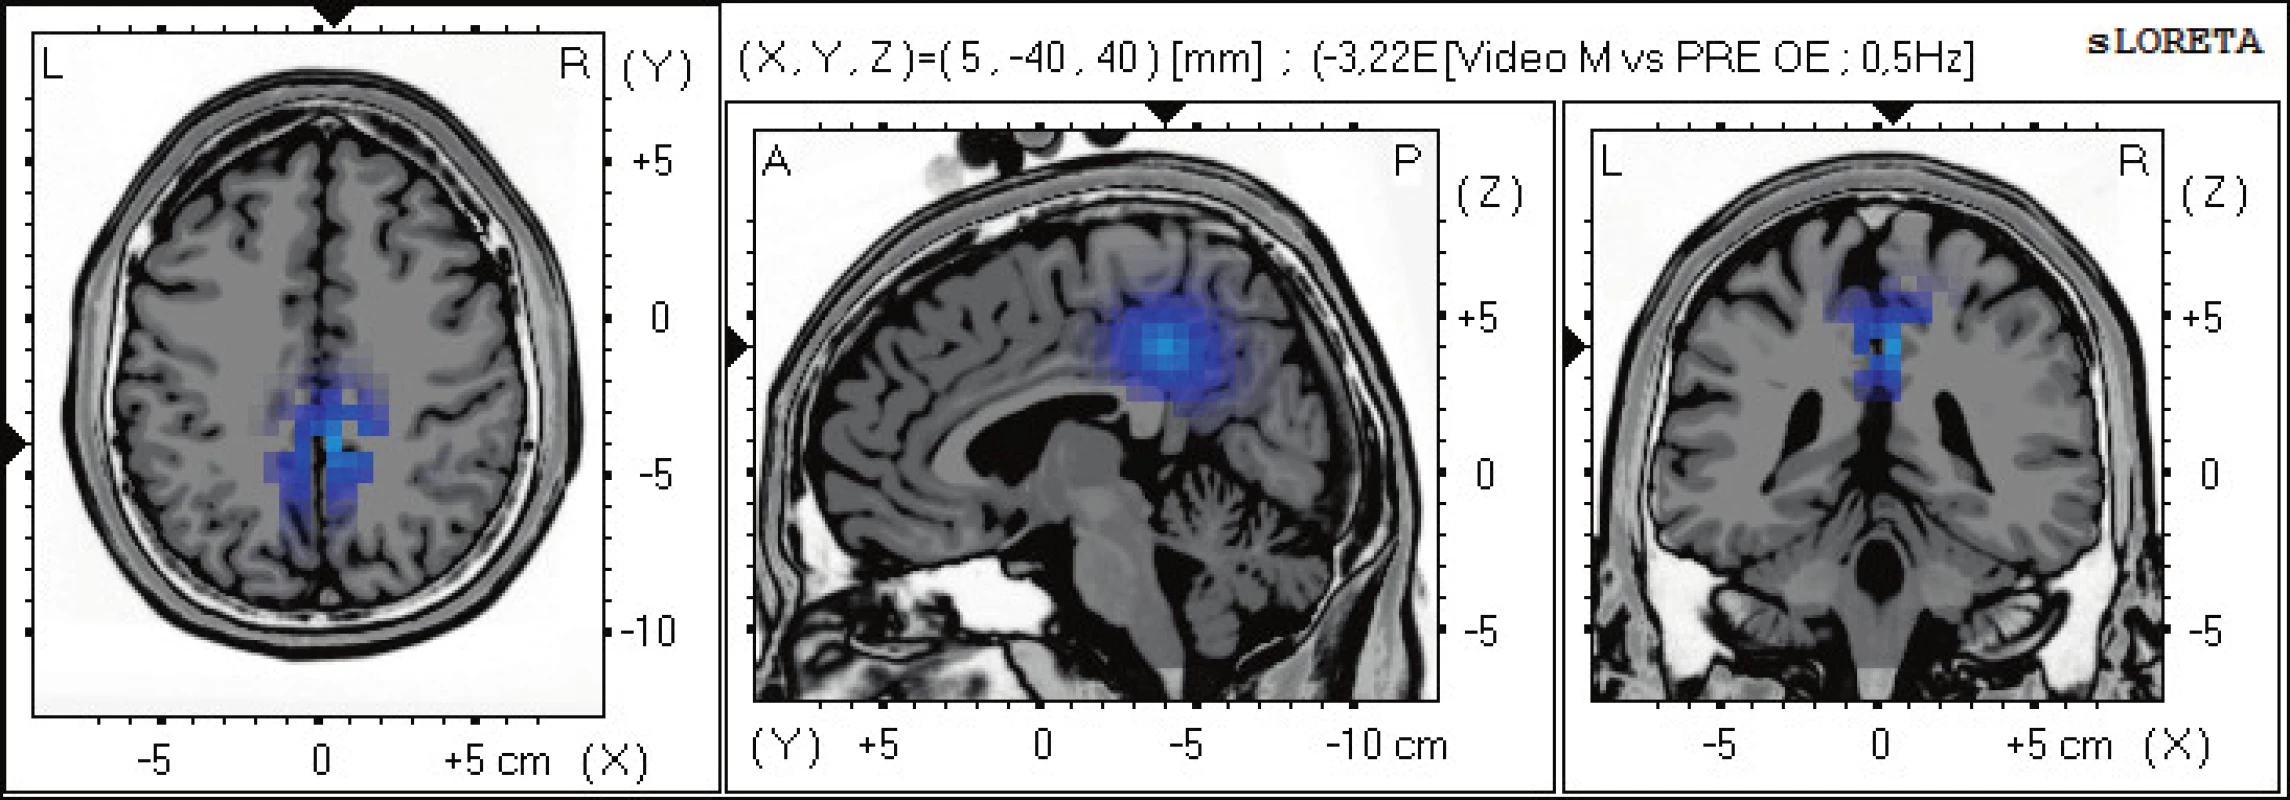 Statistické ne-parametrické mapy sLORETA diference v beta-2 pásmu při porovnání pozorování 2D videa oproti klidovému
záznamu při otevřených očích. Modrá barva znamená snížení zdrojové aktivity v gyrus cinguli BA 31, a precuneu BAs 7,5. Anatomické řezy
Talairachova obrazu mají šedou barvu (L – vlevo, R – vpravo).